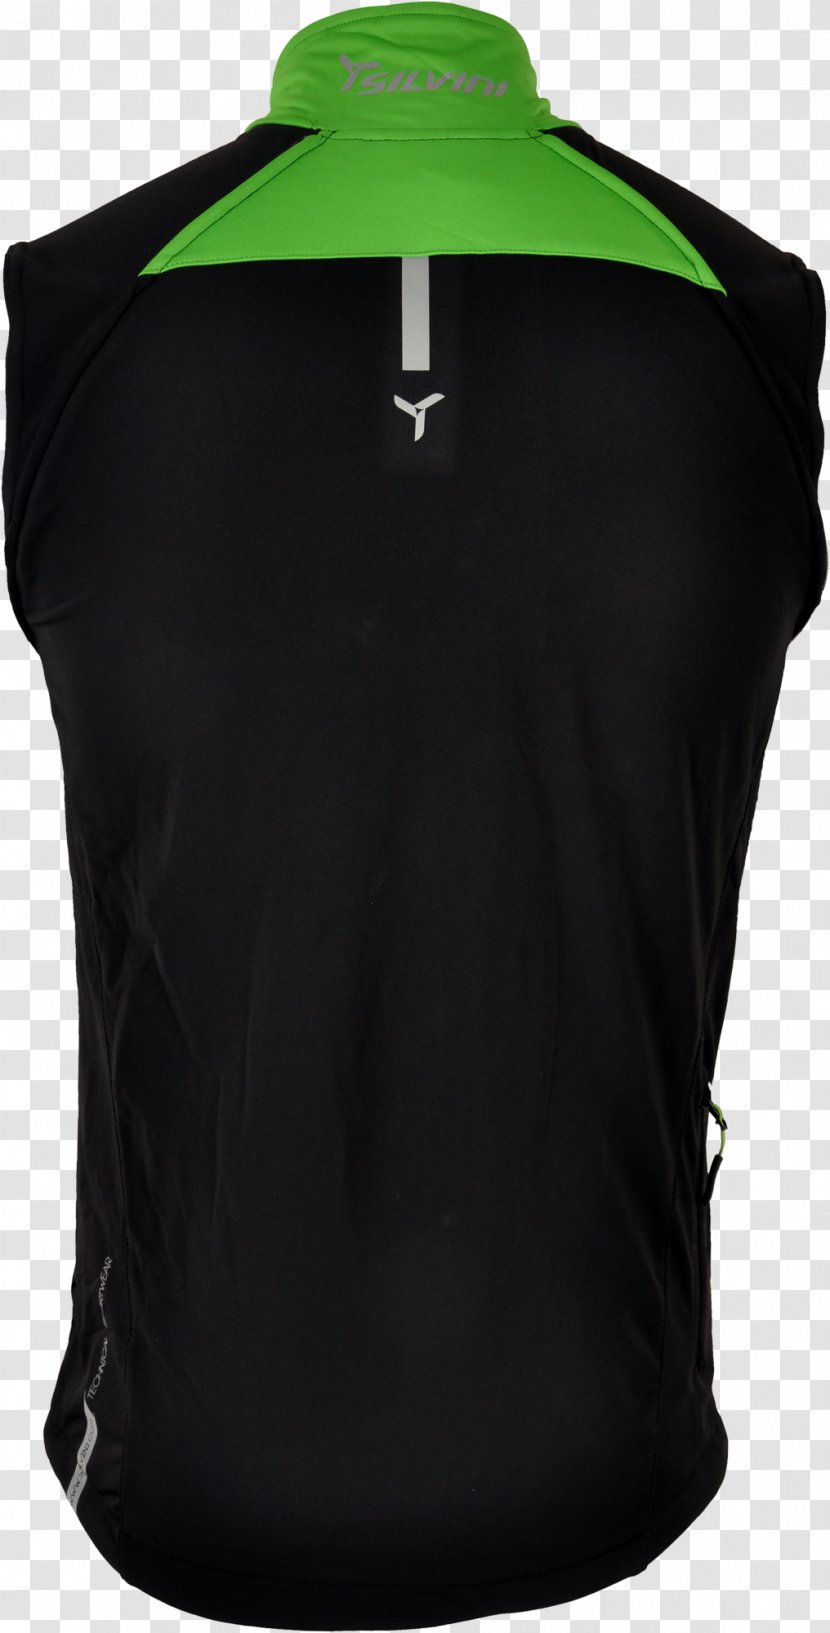 Gilets Jacket Sleeveless Shirt Zipper Transparent PNG